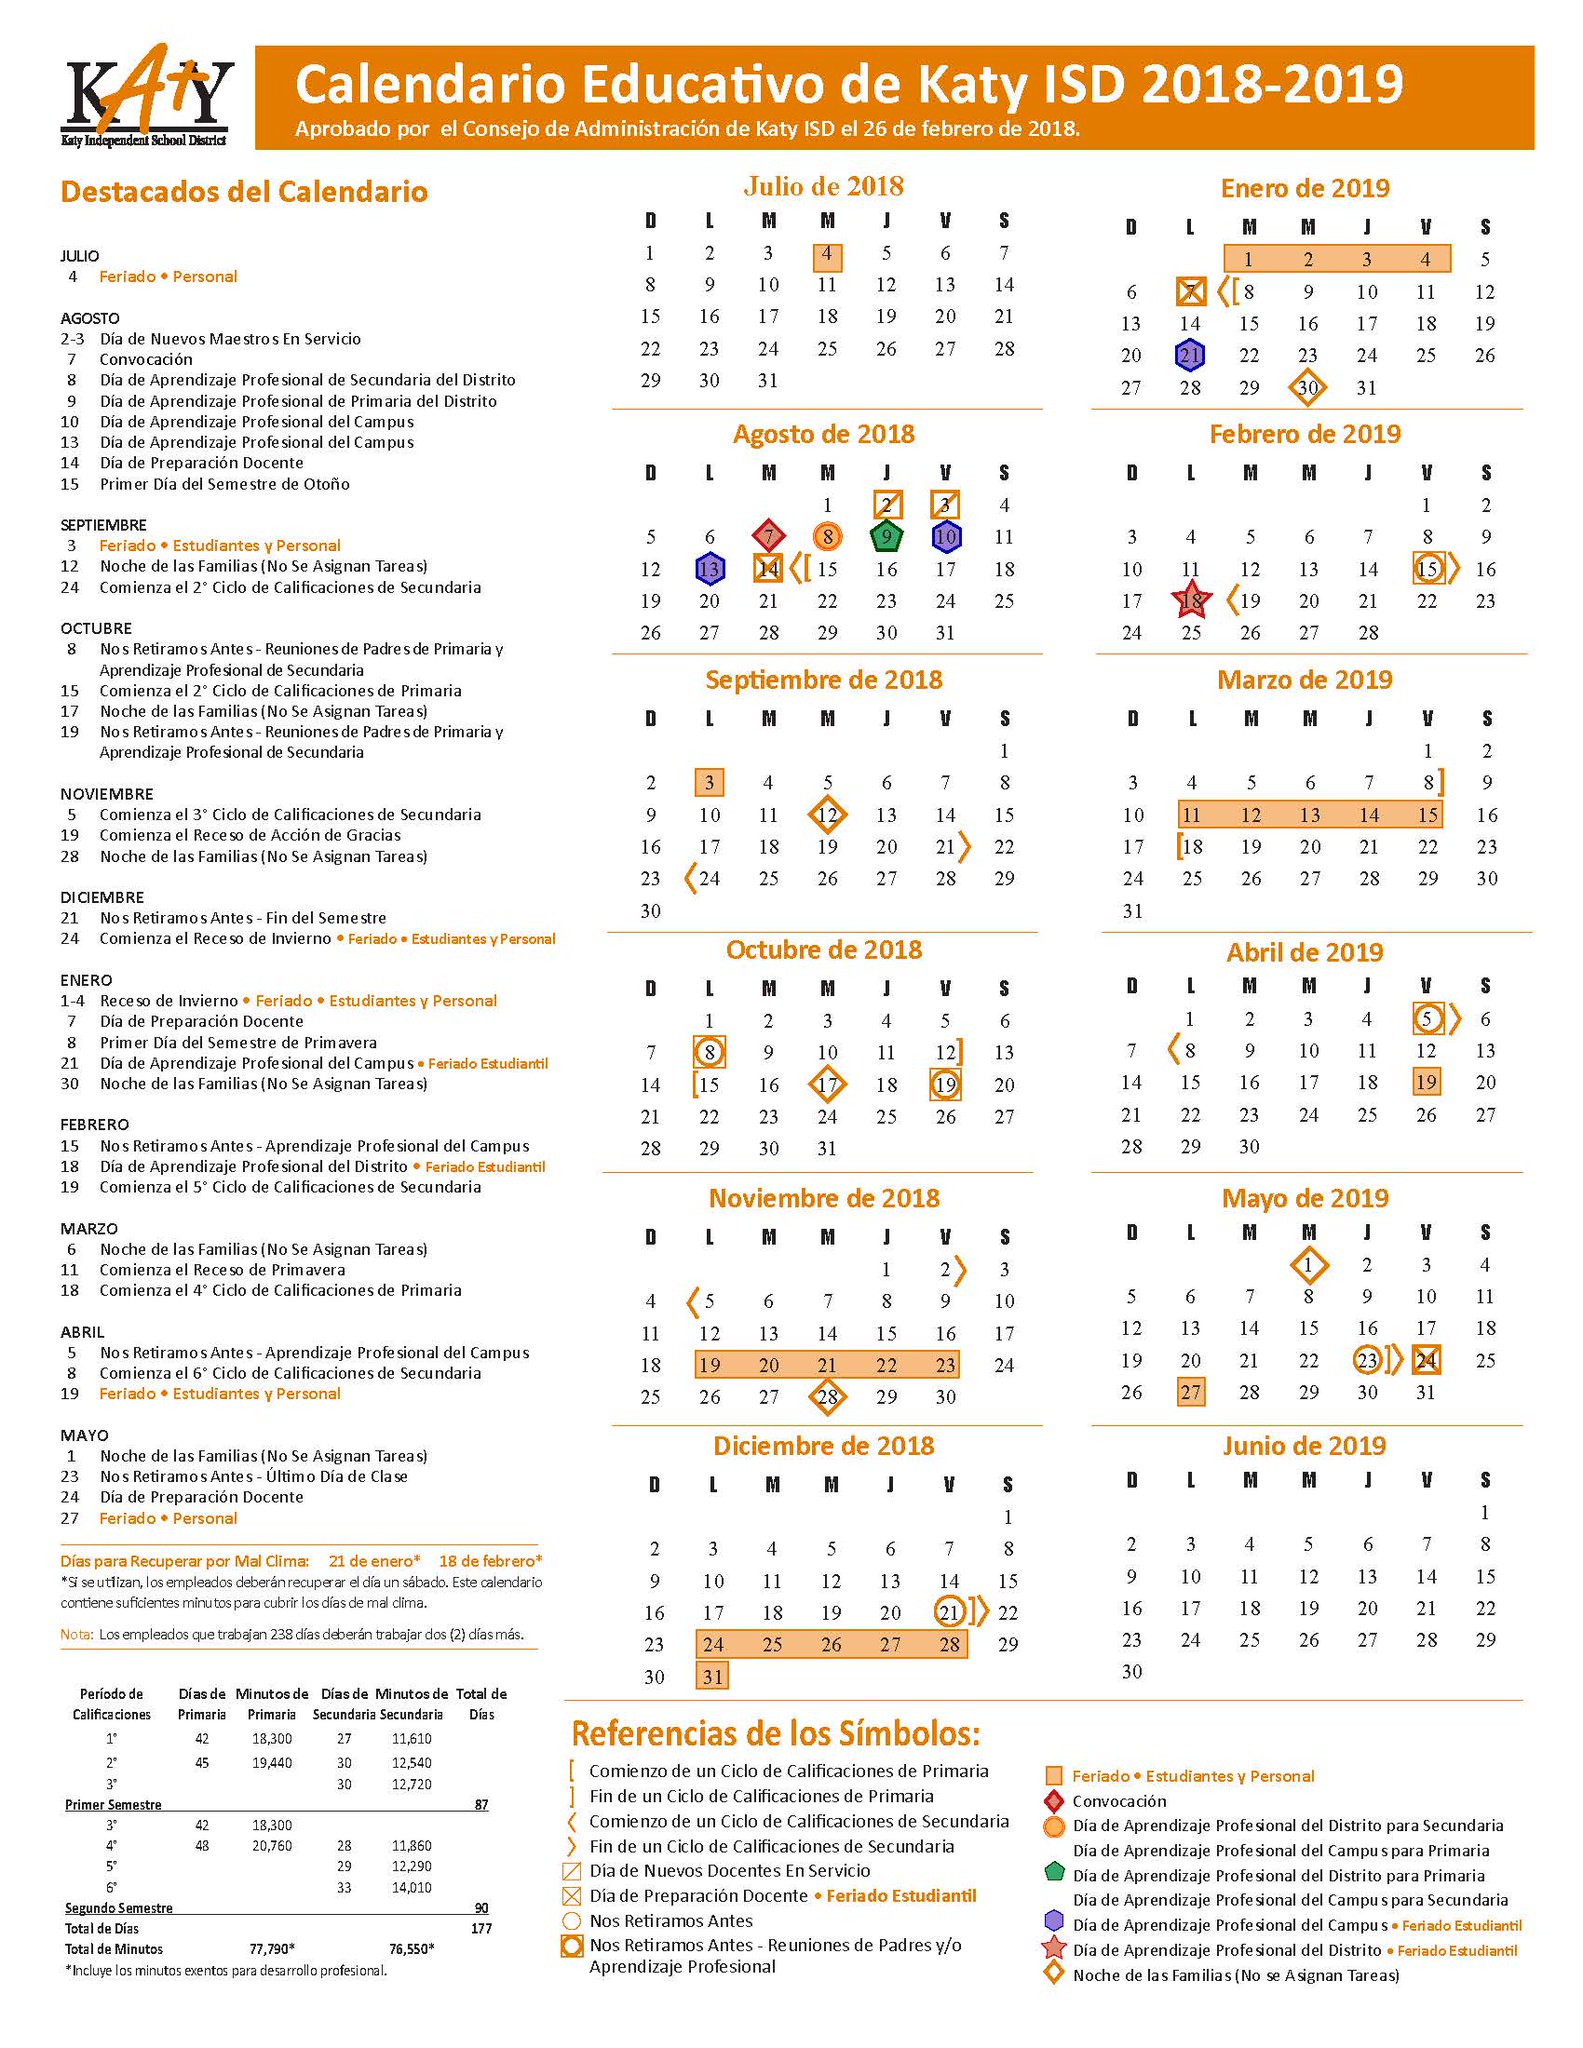 katyisd-calendar-21-22-customize-and-print